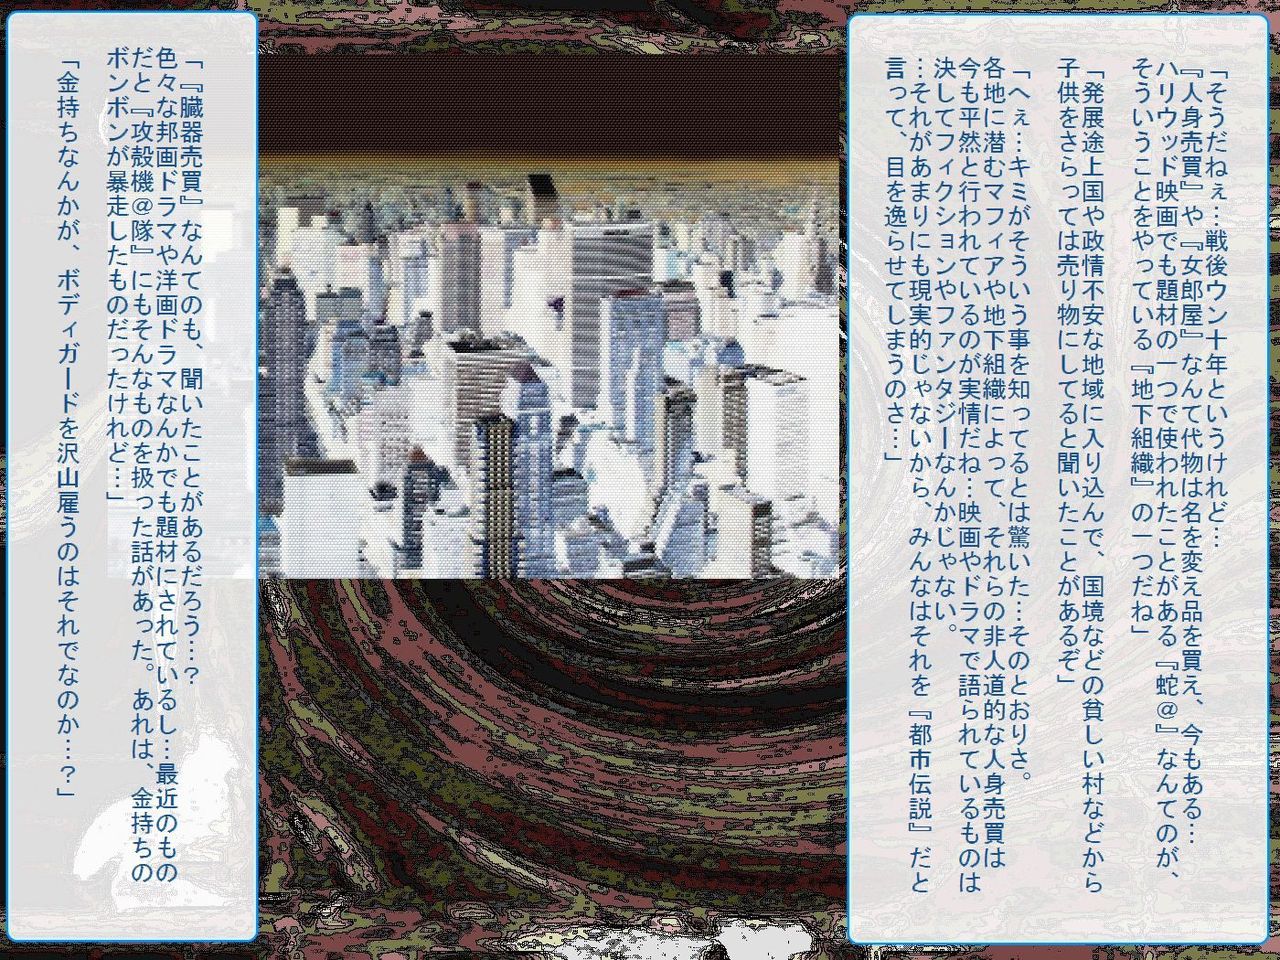 [Teito Bouei Ryodan] RTK Book Ver. 8.4: “‘Tsuki’ Monogatari Saishuu-banashi ‘Tsubasa, soshite... Mayoi maimai’” (<Monogatari> Series) [帝都防衛旅団] RTKBOOK Ver.8.4 「『憑き』物語 最終話 『ひ〇ぎ倶楽部』」 (〈物語〉シリーズ) 86